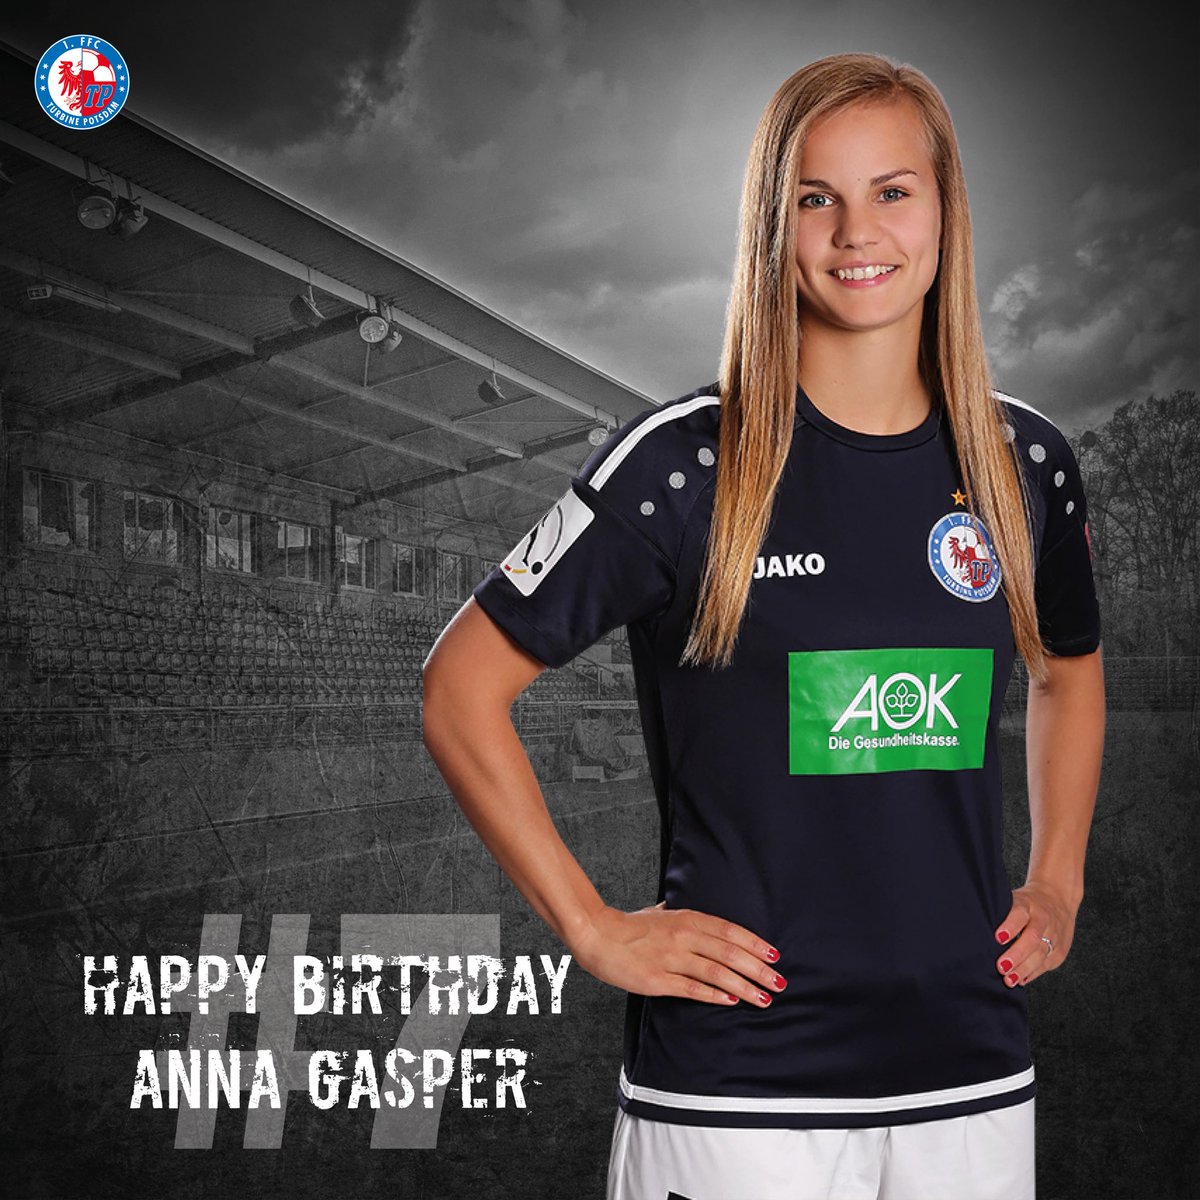 Anna Gasper